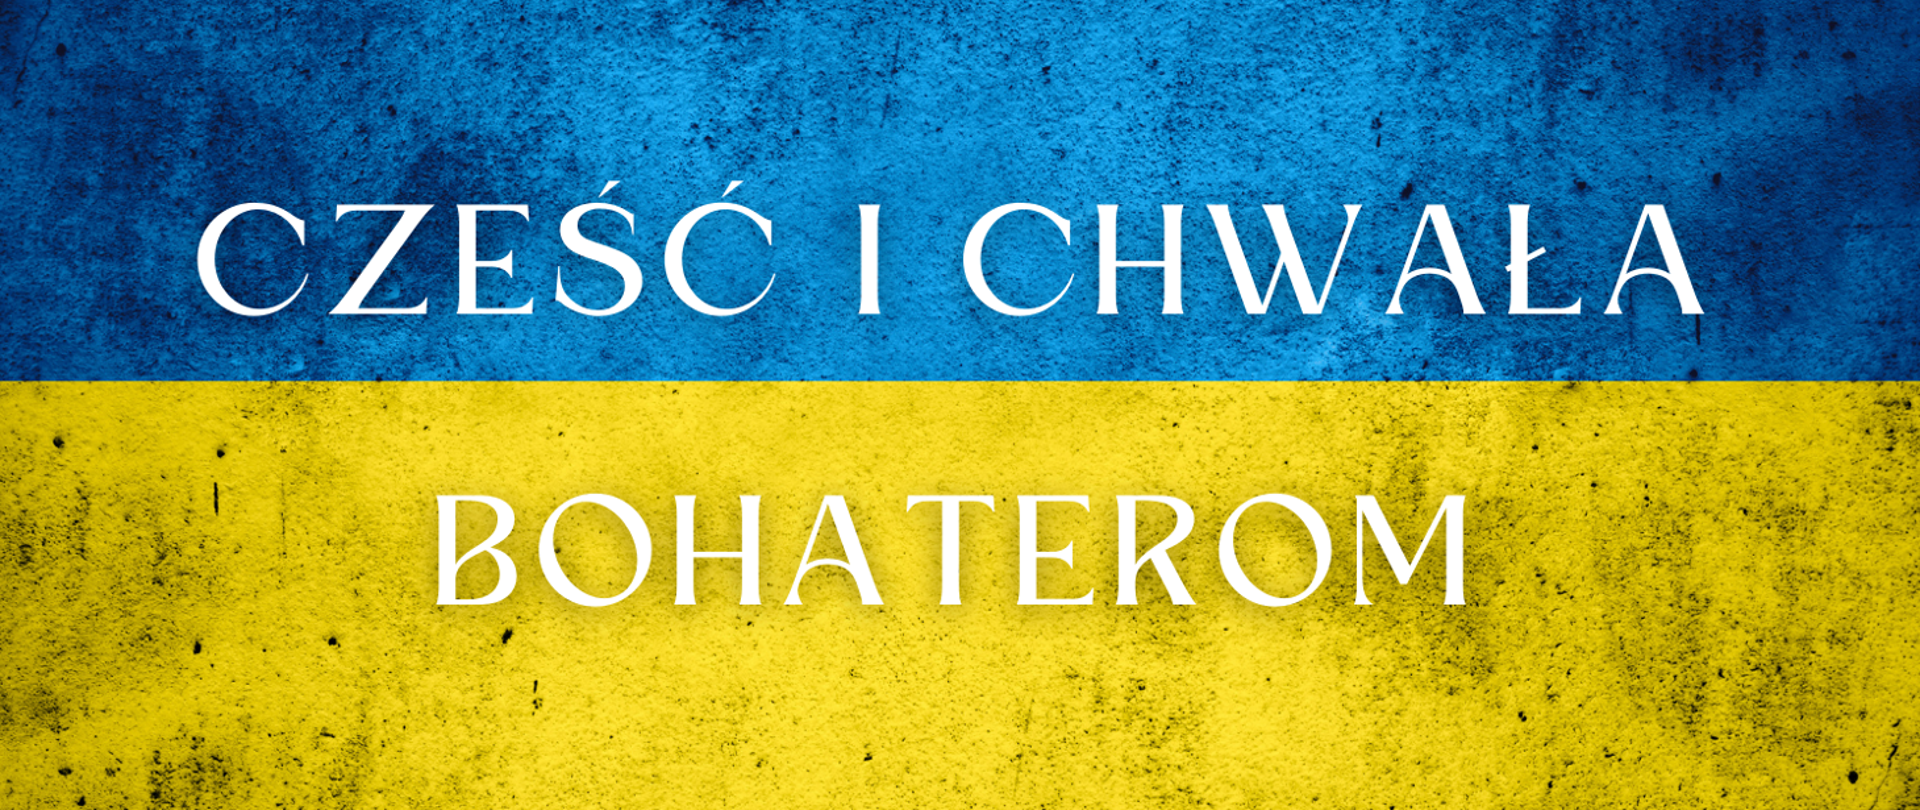 Flaga Ukrainy z napisem "Cześć i chwała Bohaterom"